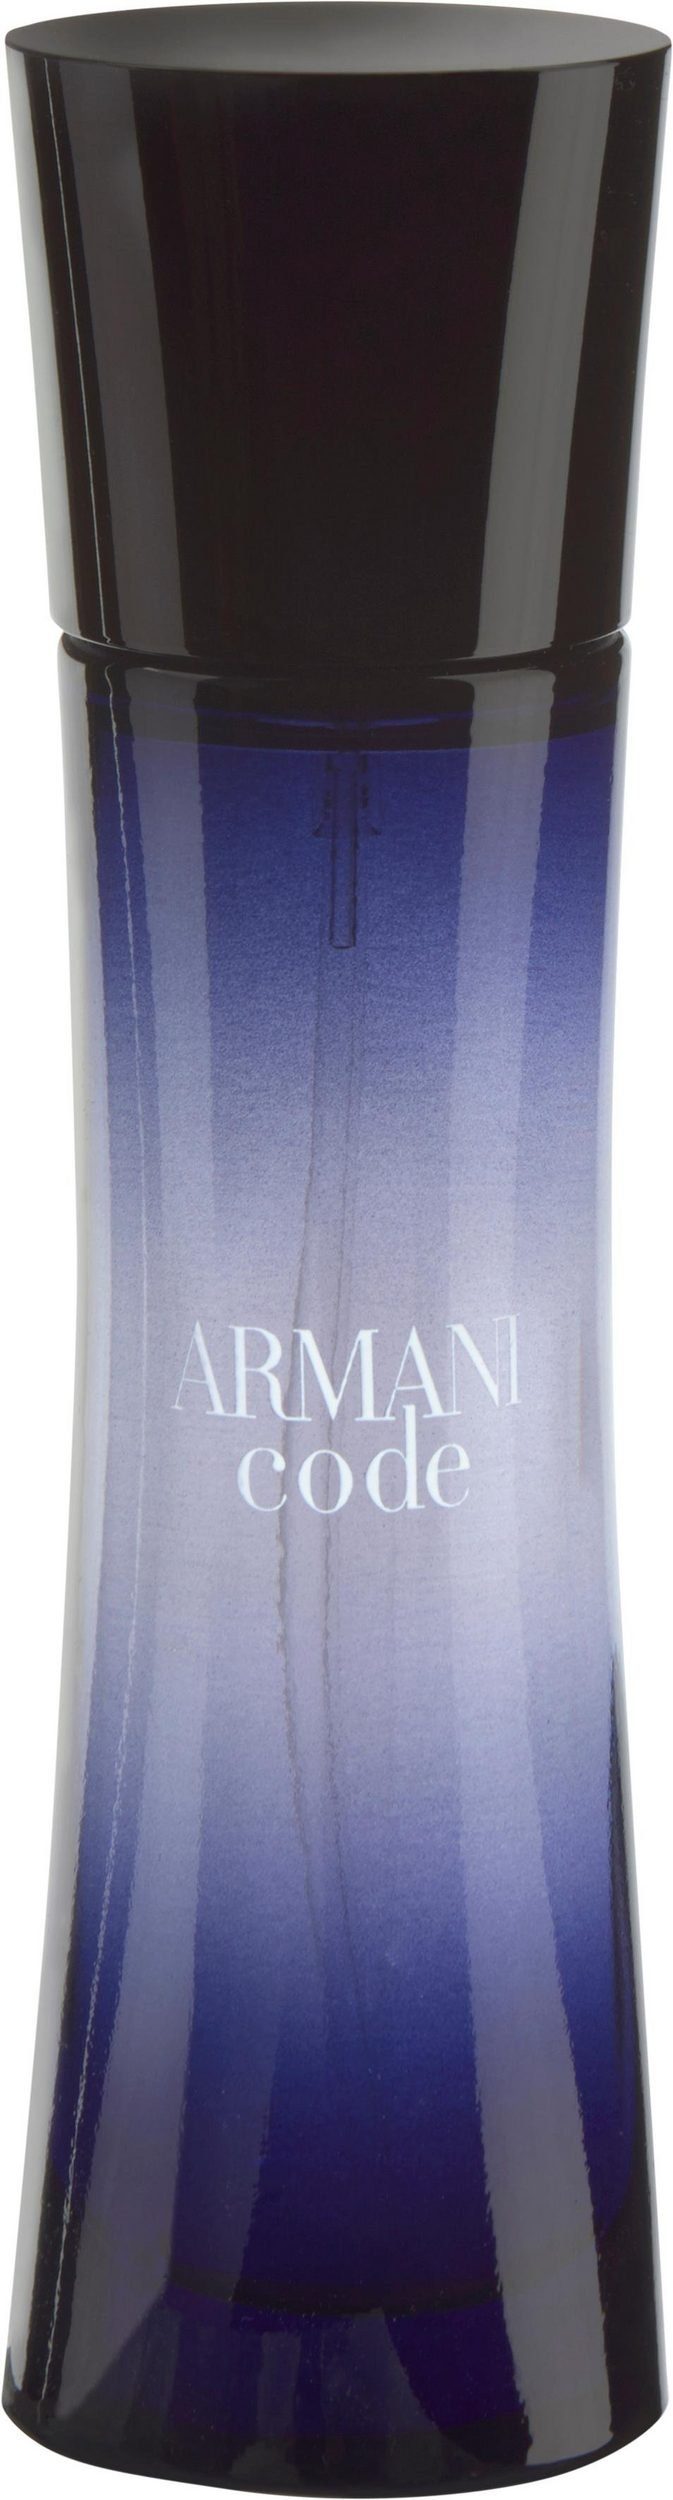 Giorgio Armani Eau Parfum 50 Pour Femme de Eau Armani Parfum de ml Code